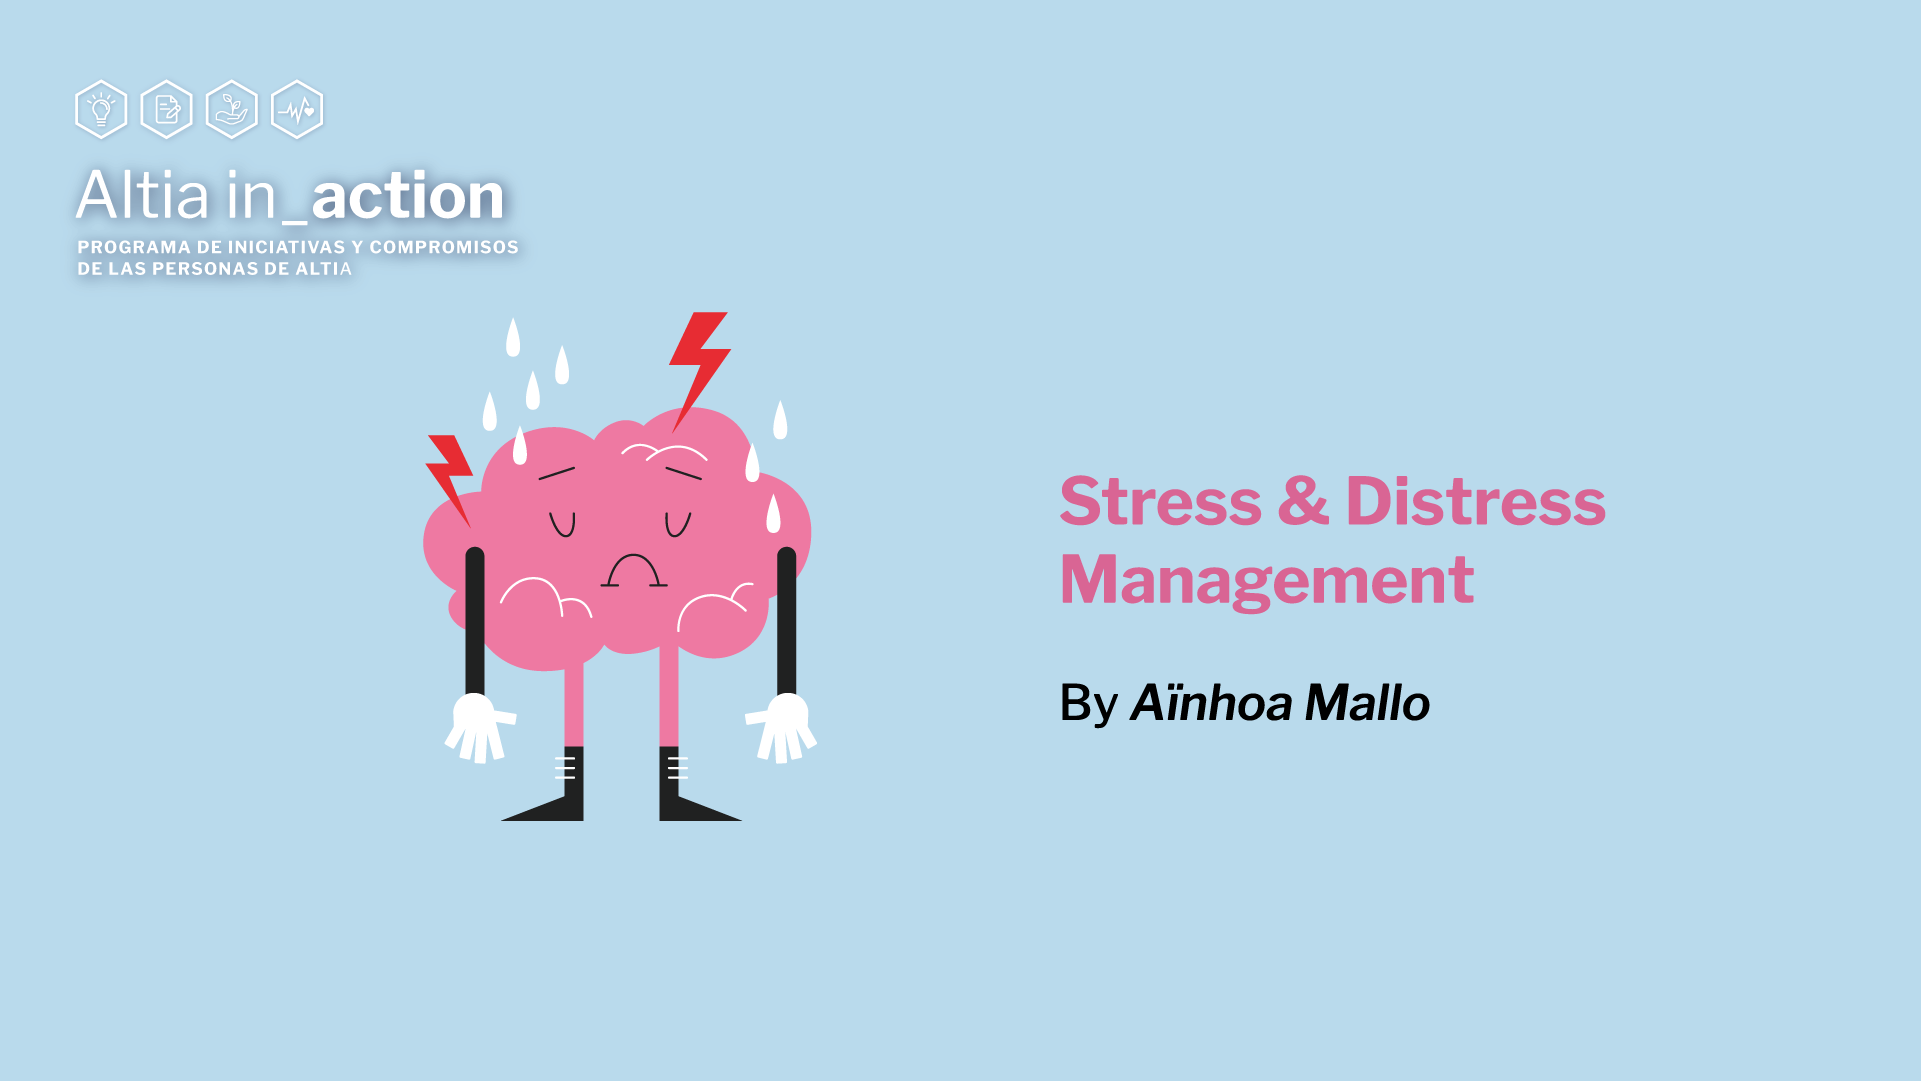 Stress & distress management